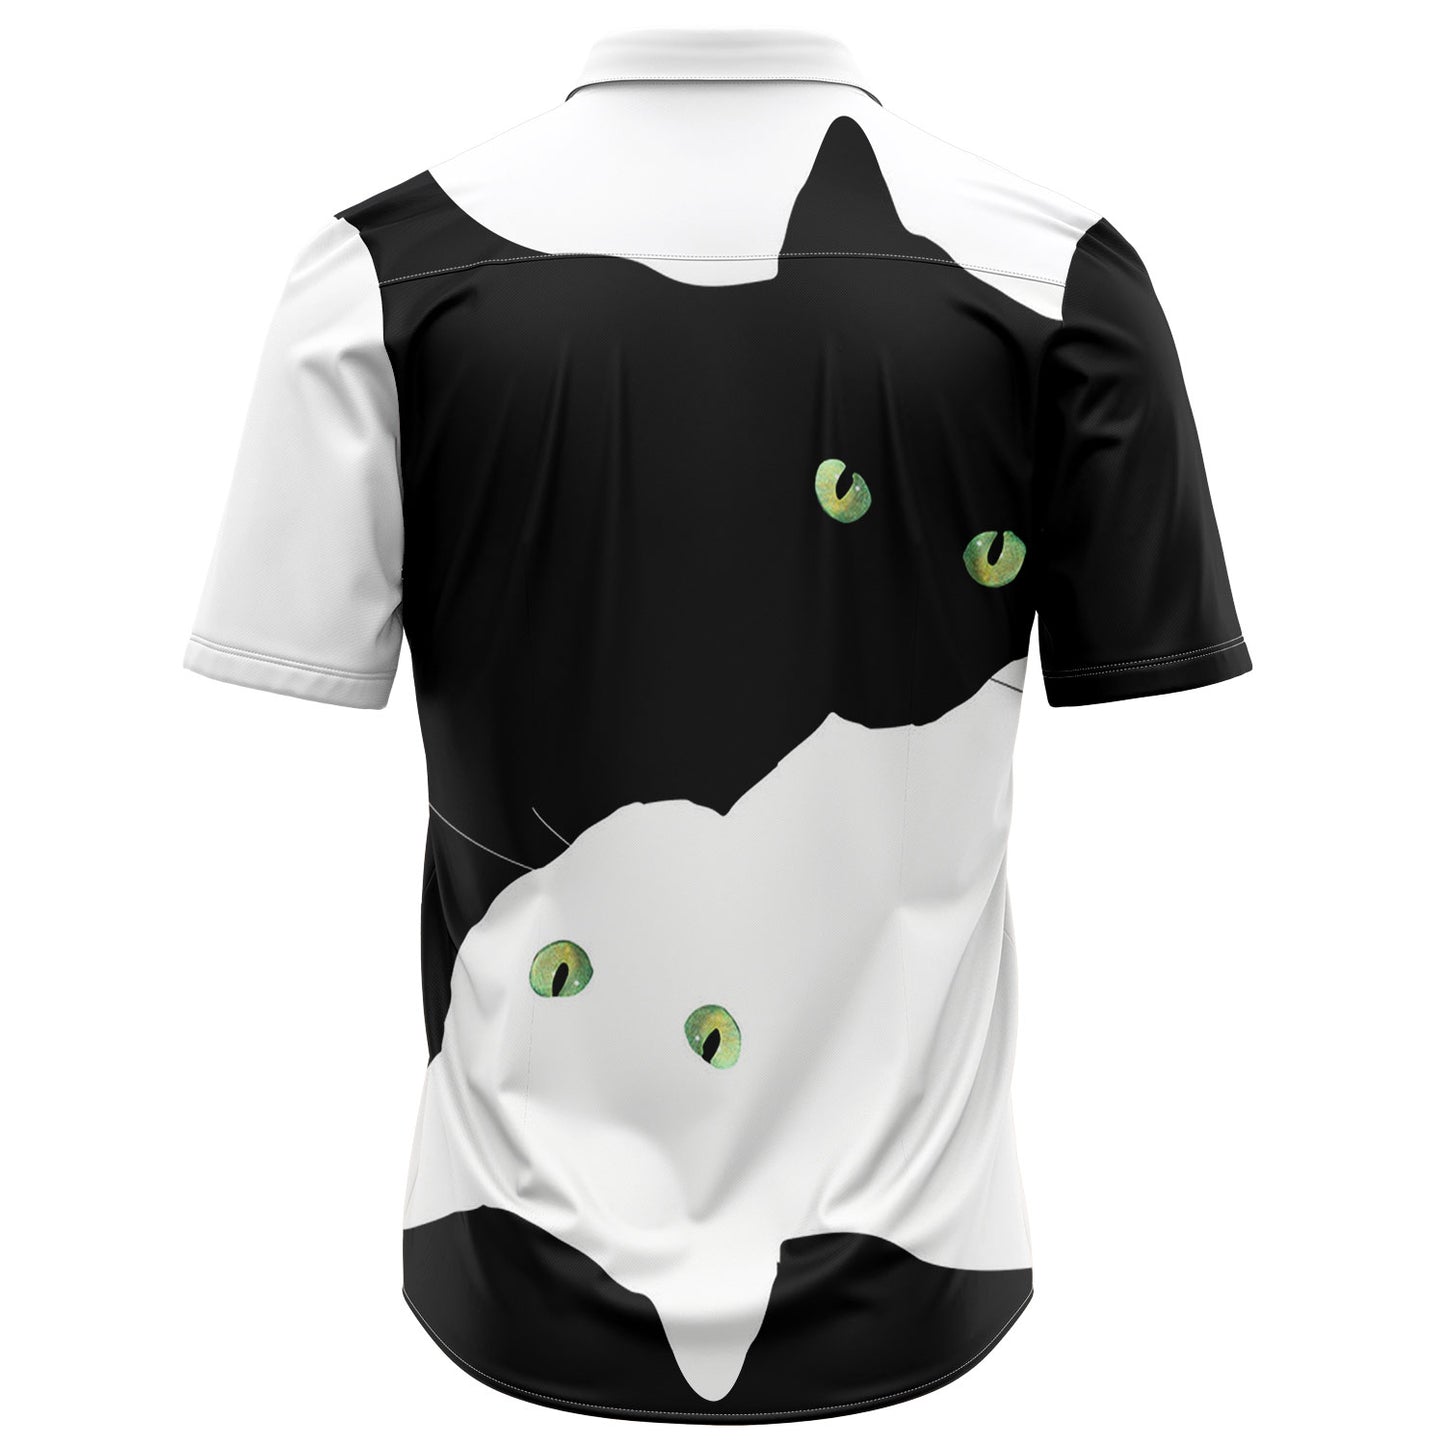 White And Black Cat H217018 Hawaiian Shirt